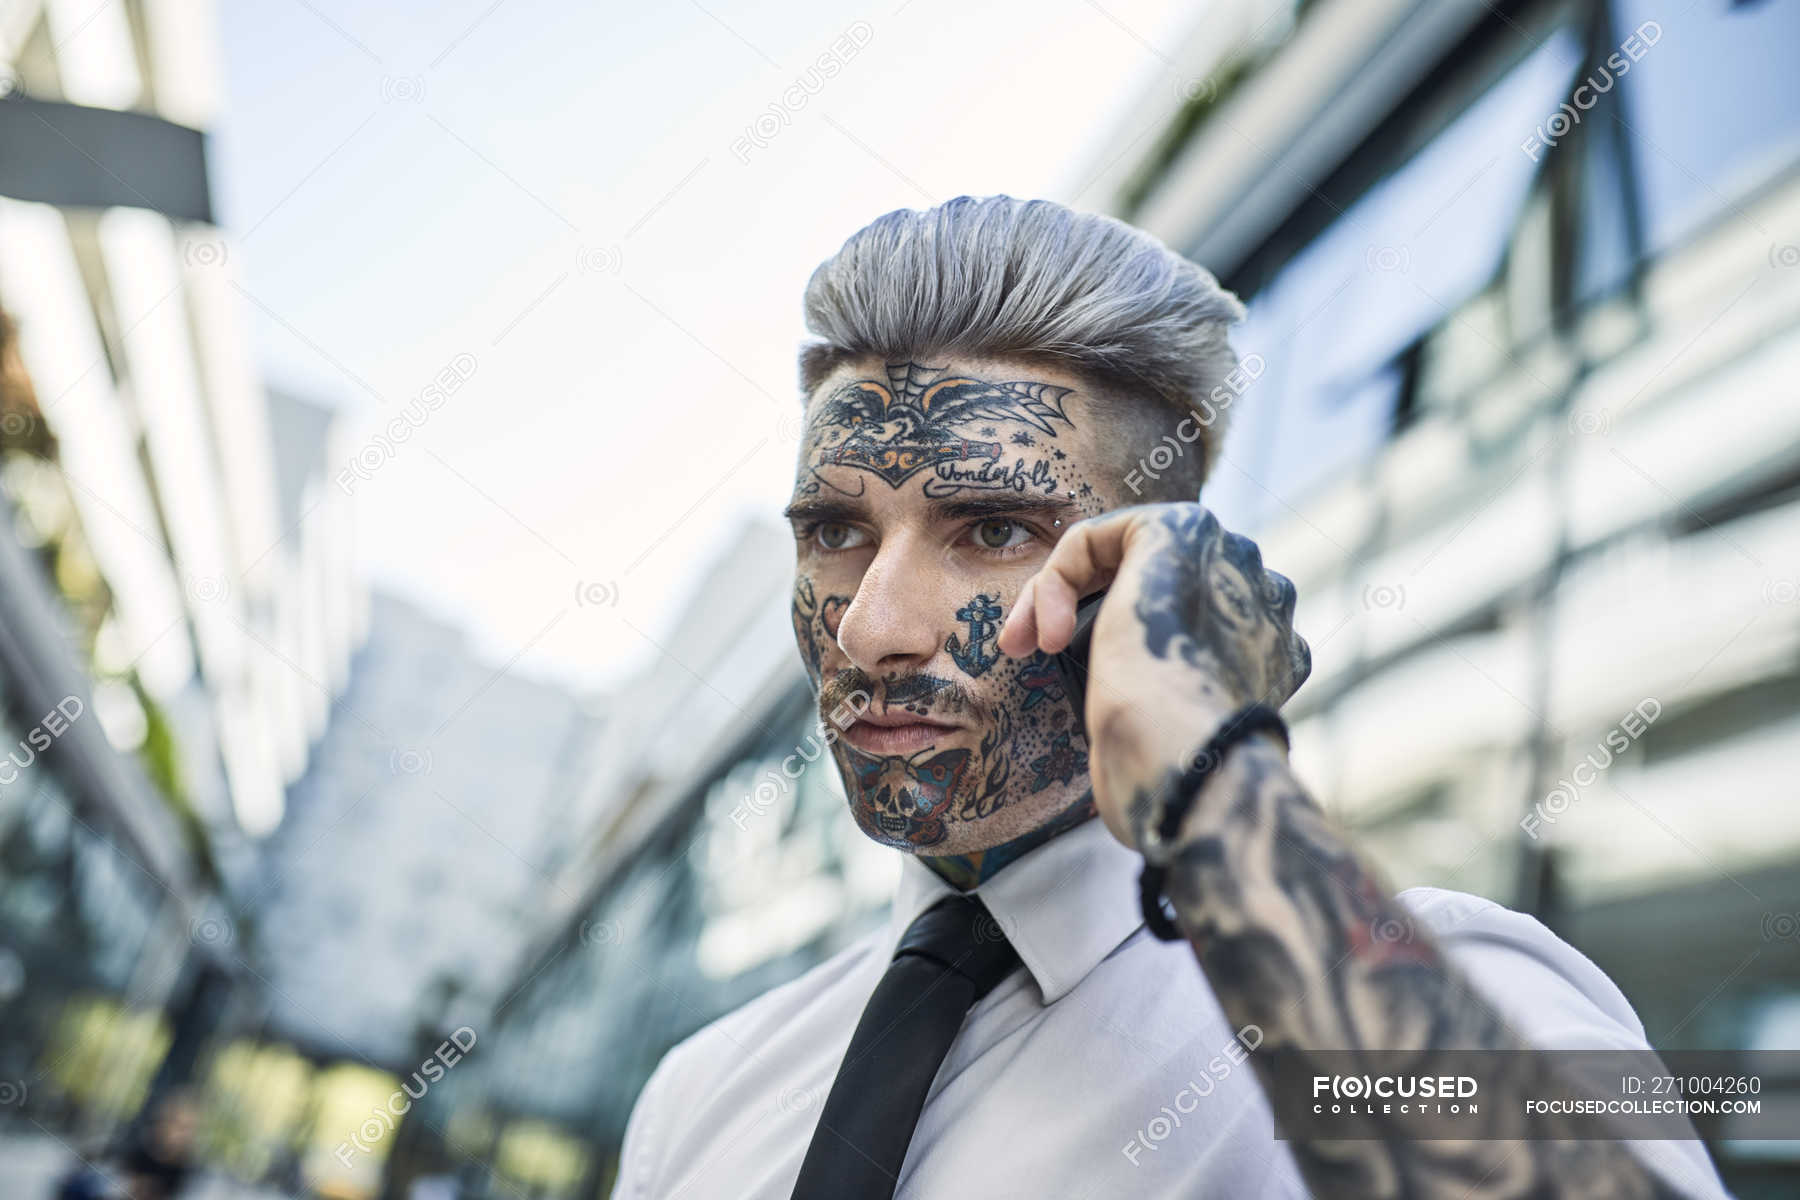 Jeune homme d'affaires au visage tatoué, parlant au téléphone — Scène  urbaine, individualité - Stock Photo | #271004260